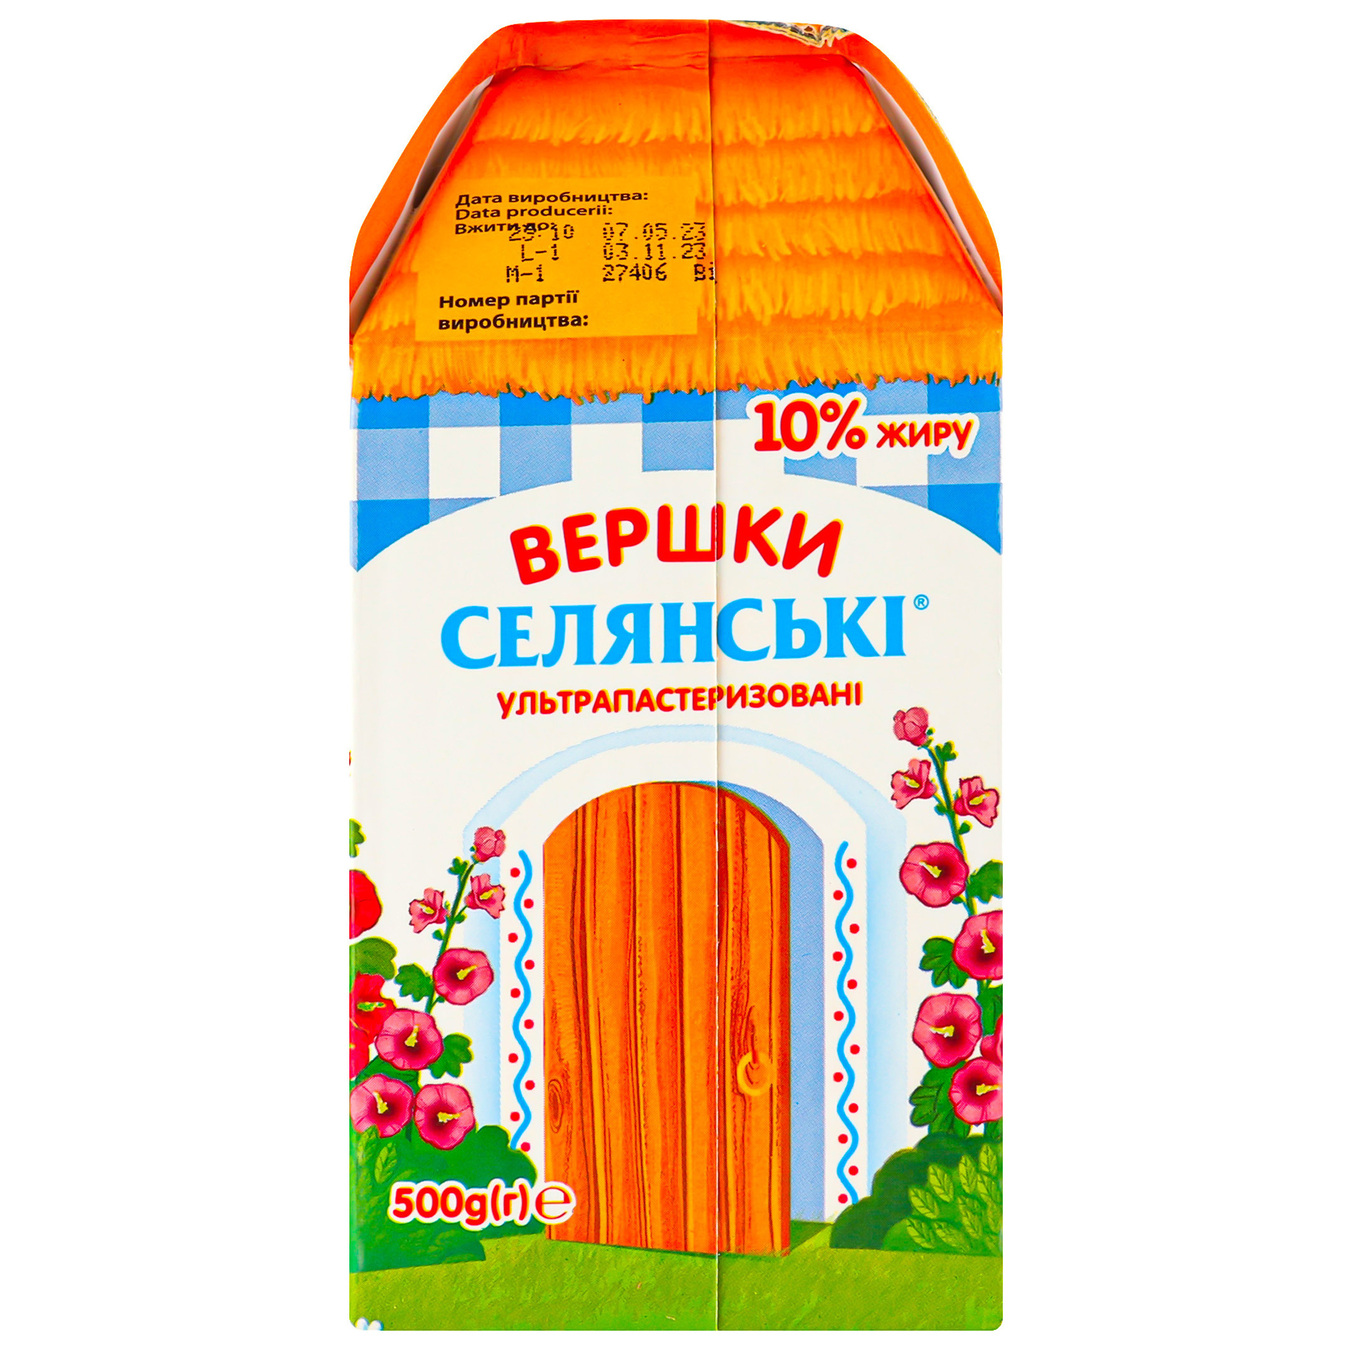 Cream Selyanske Ultrapasteurized 10% 500g 3